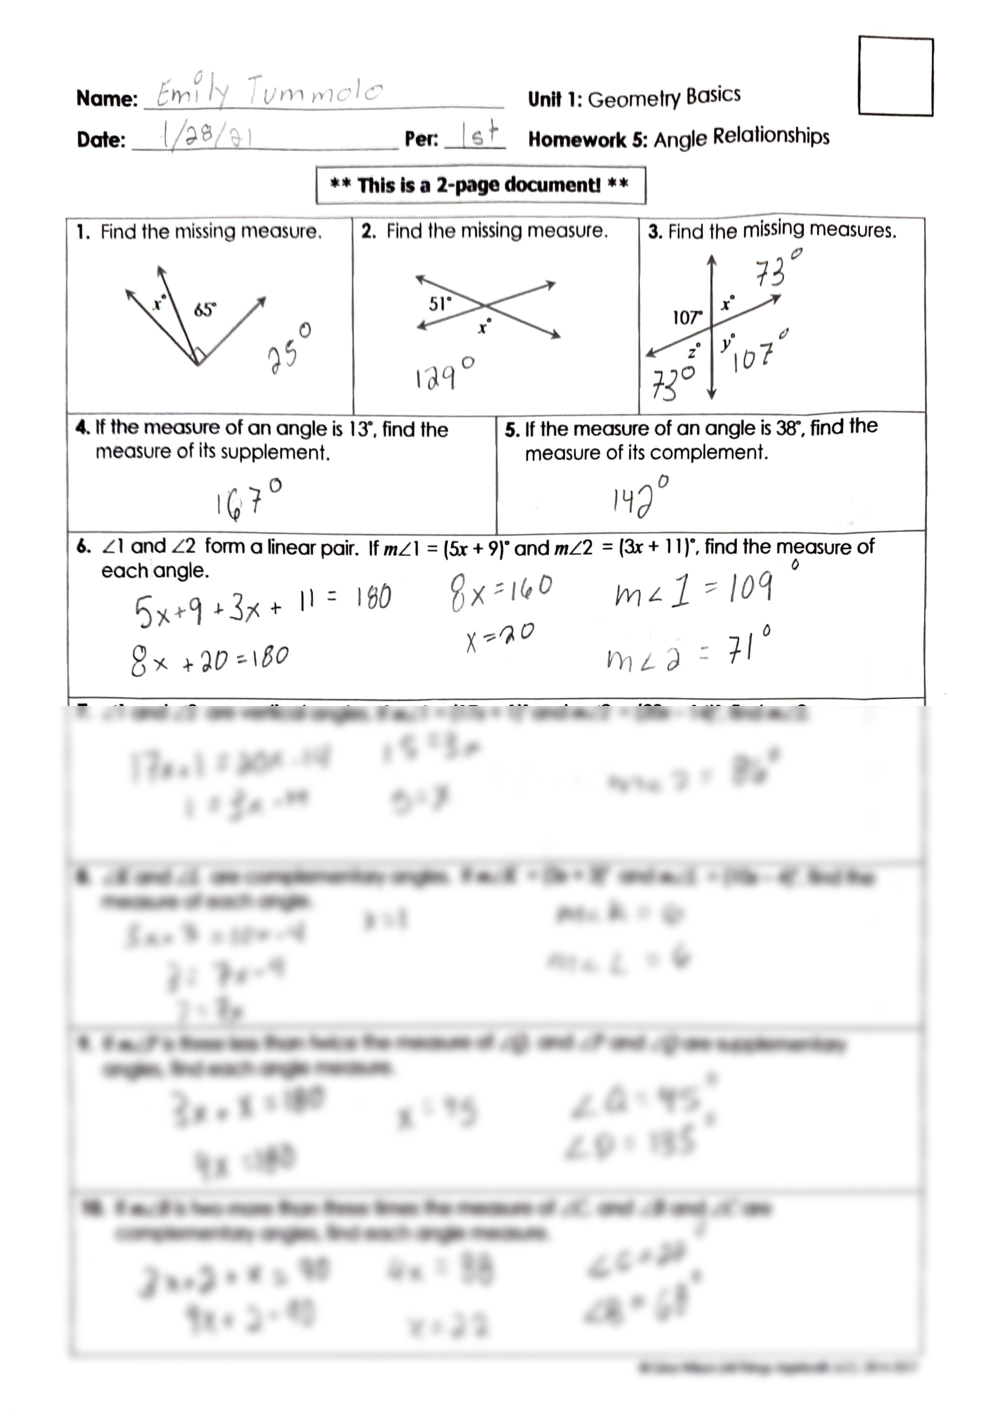 solution-unit-1-angle-relationship-geometry-basics-worksheet-studypool-math-worksheet-answers